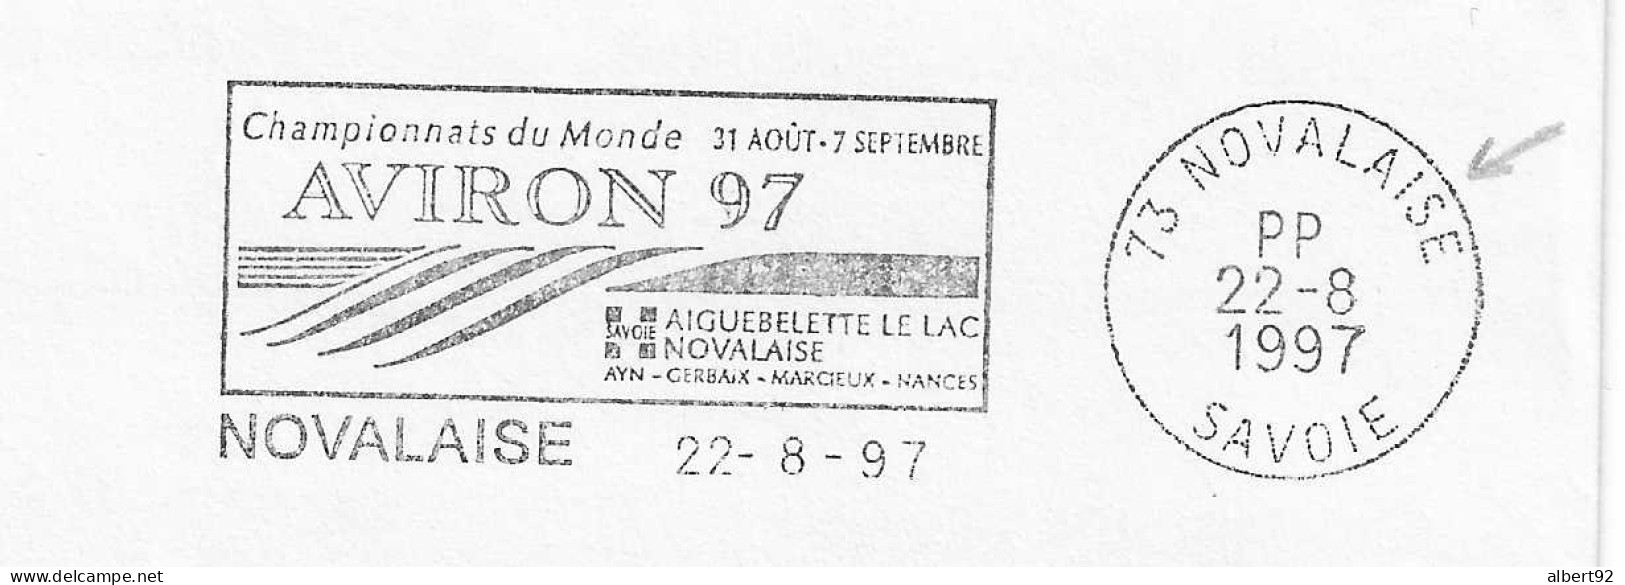 1997 Championnats Du Monde D'Aviron à Aiguebelette: Flamme Postale Port Payé (PP Dans Le Bloc Dateur) - Rowing